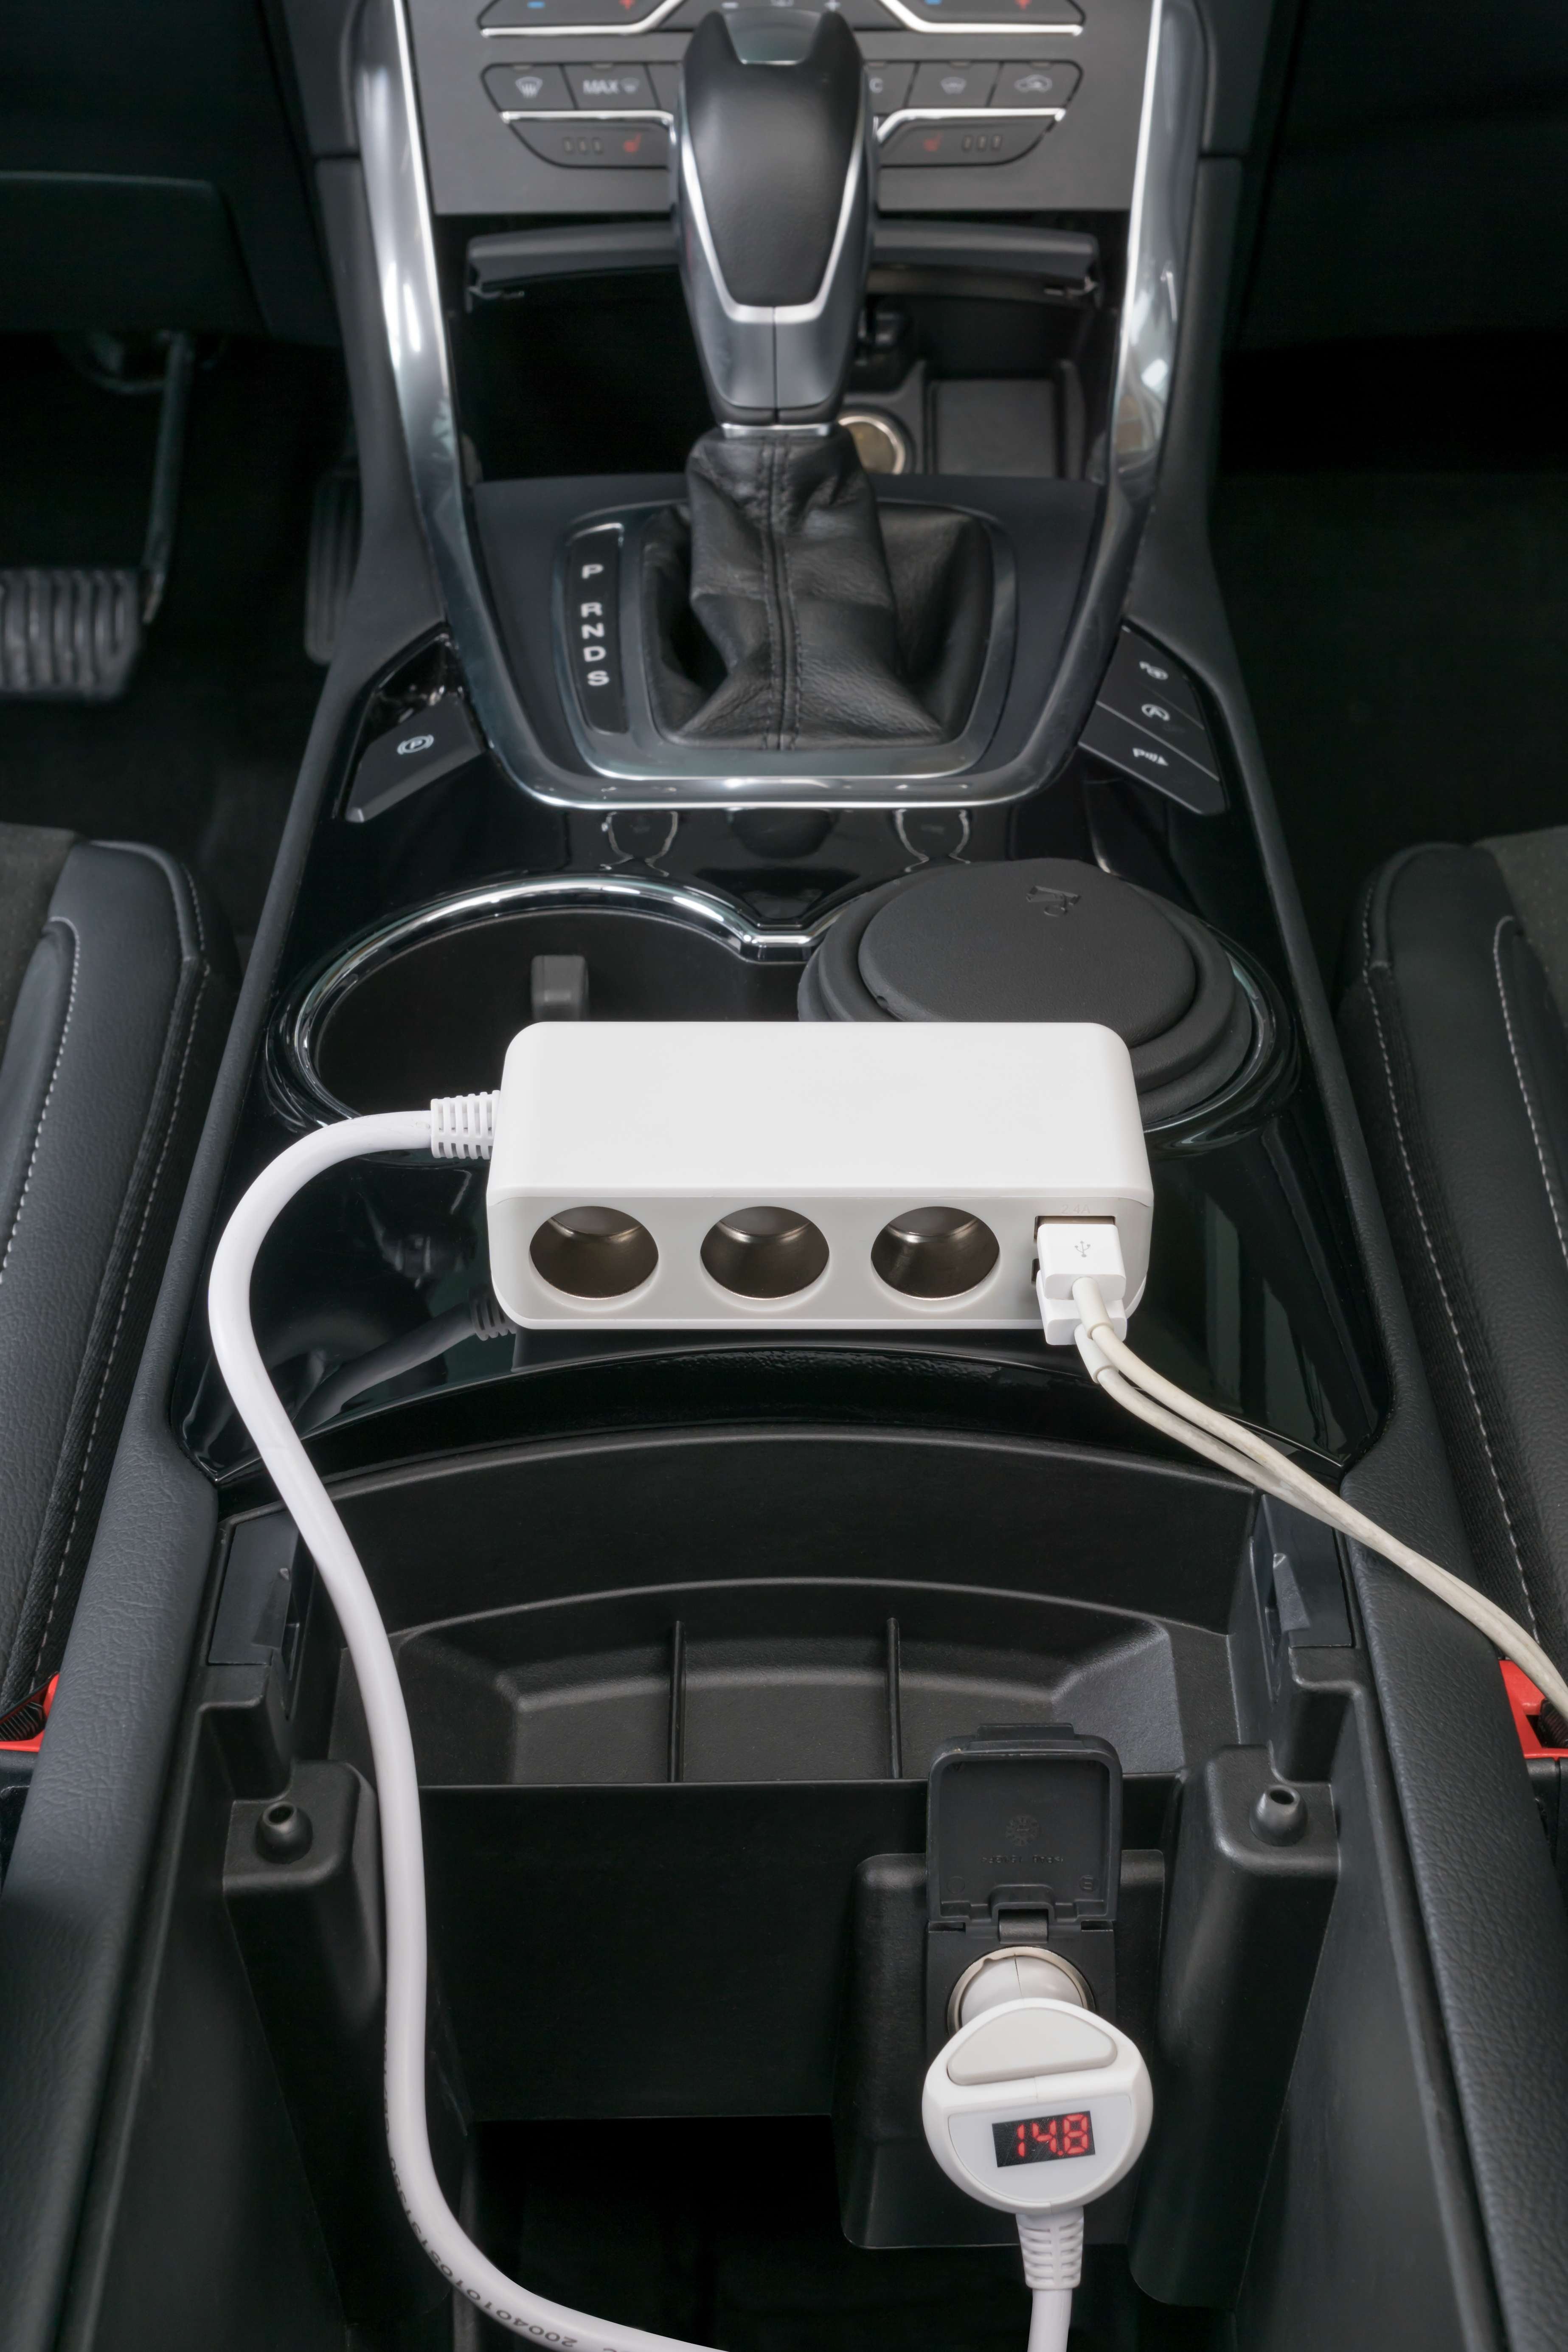 Autolader Smart Charge Deluxe, autolader met 3 verdeelstekkers en 2 USB poorten, sigarettenaansteker lader 12/24V wit